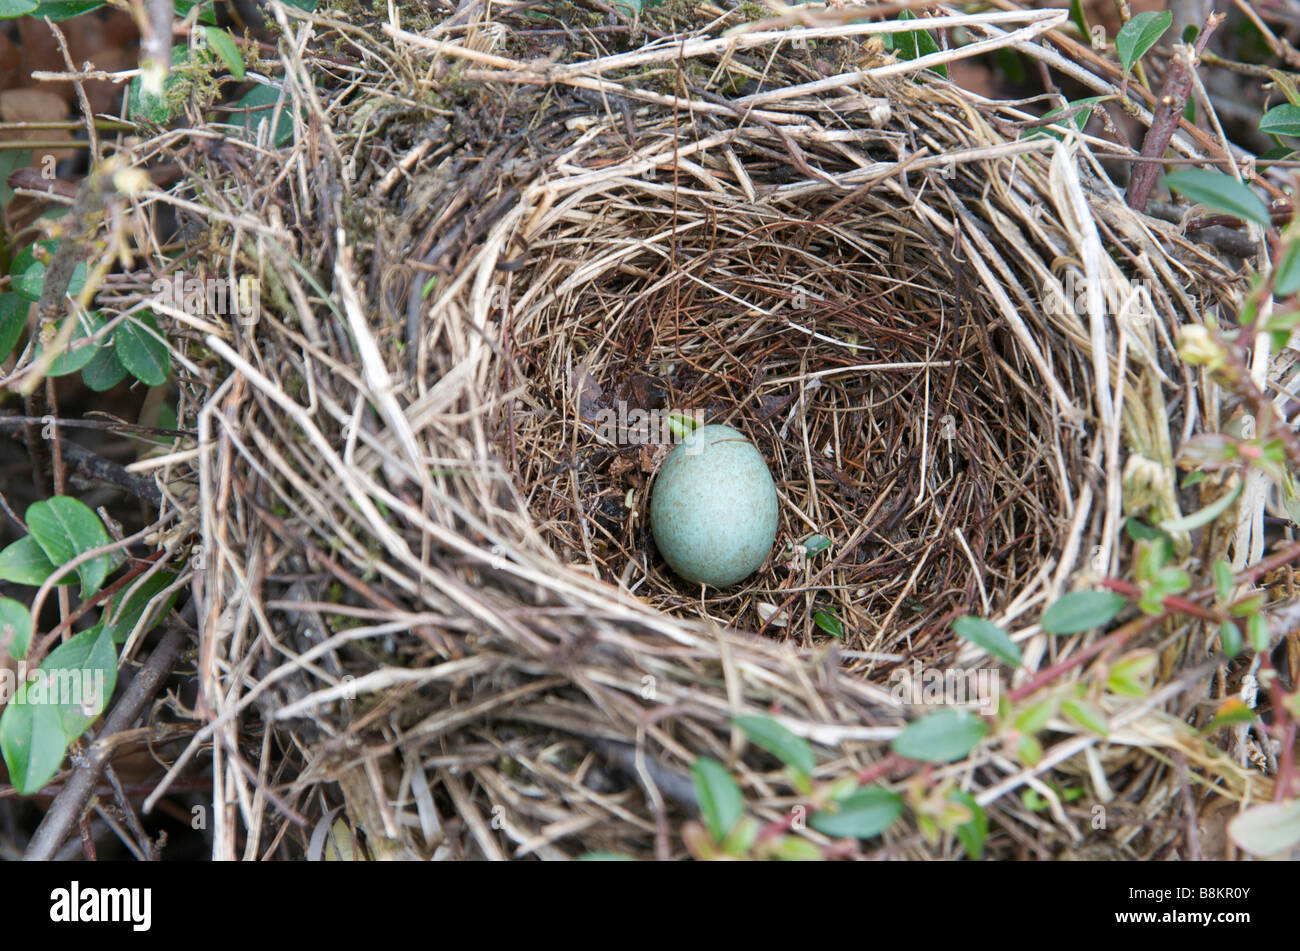 Birds Nest - oeuf d'épaulettes dans un nid Banque D'Images